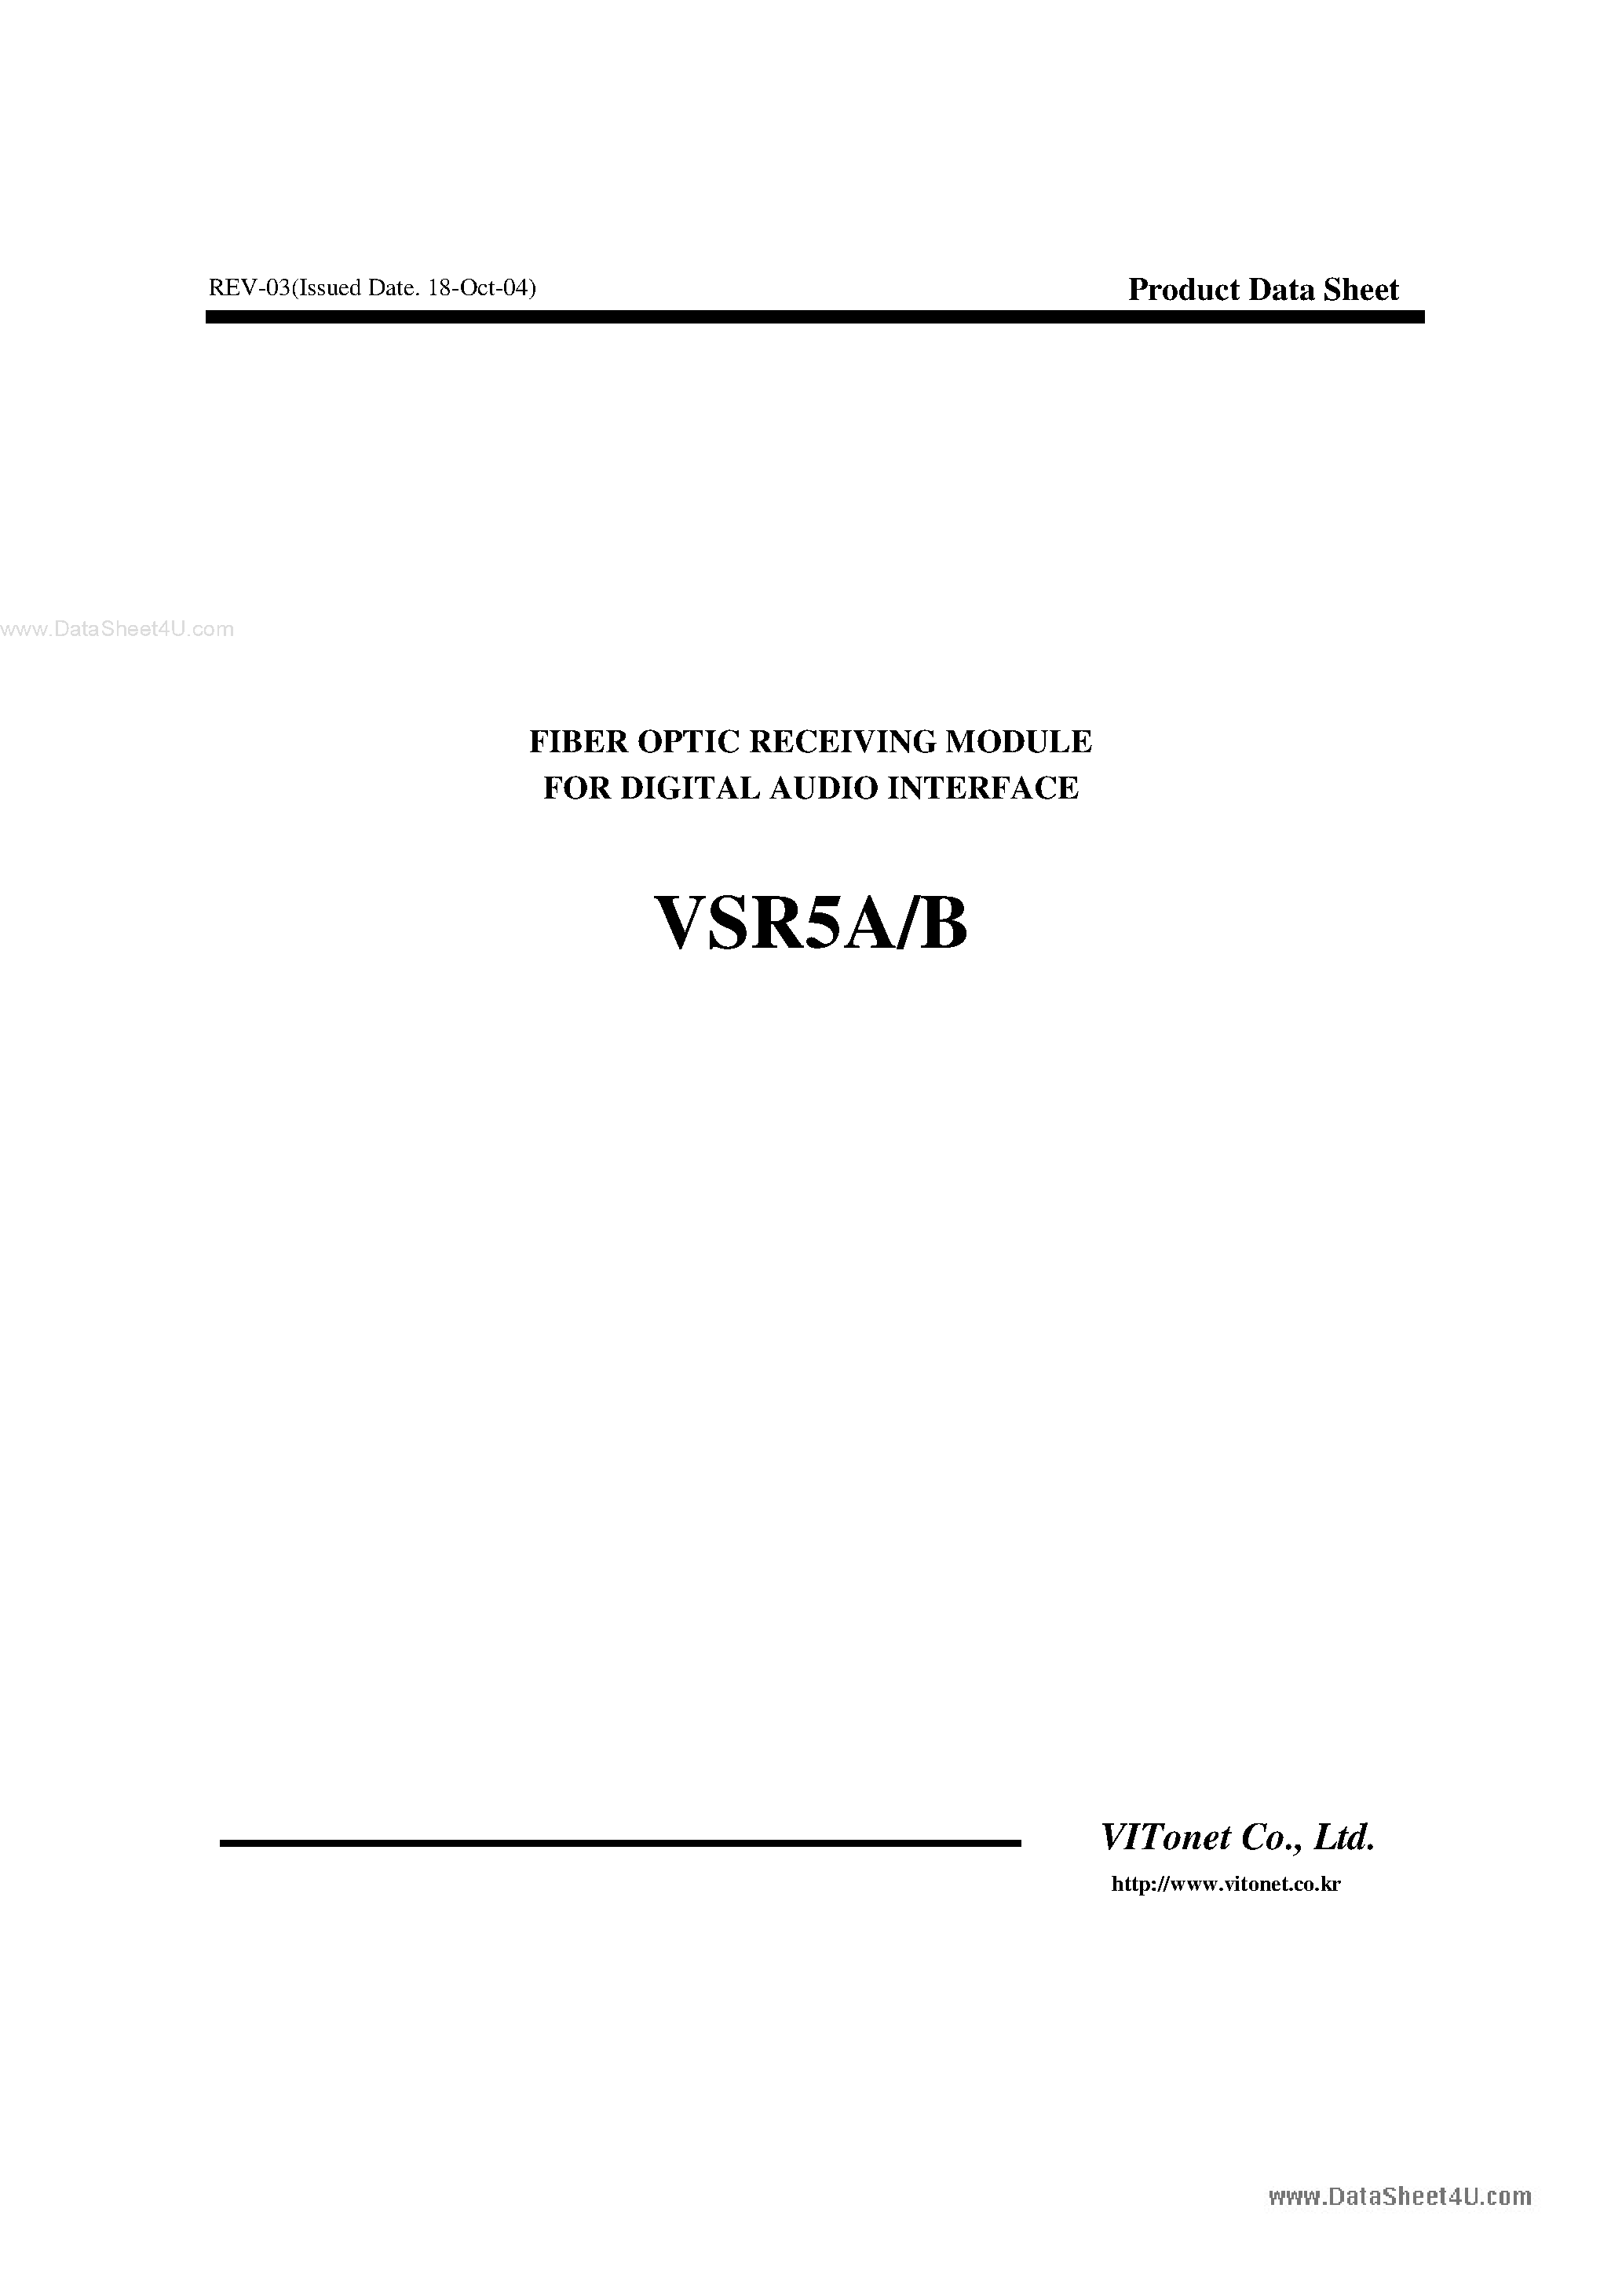 Даташит VSR5A - (VSR5A/B) Fiber Optic Receiving Module страница 1